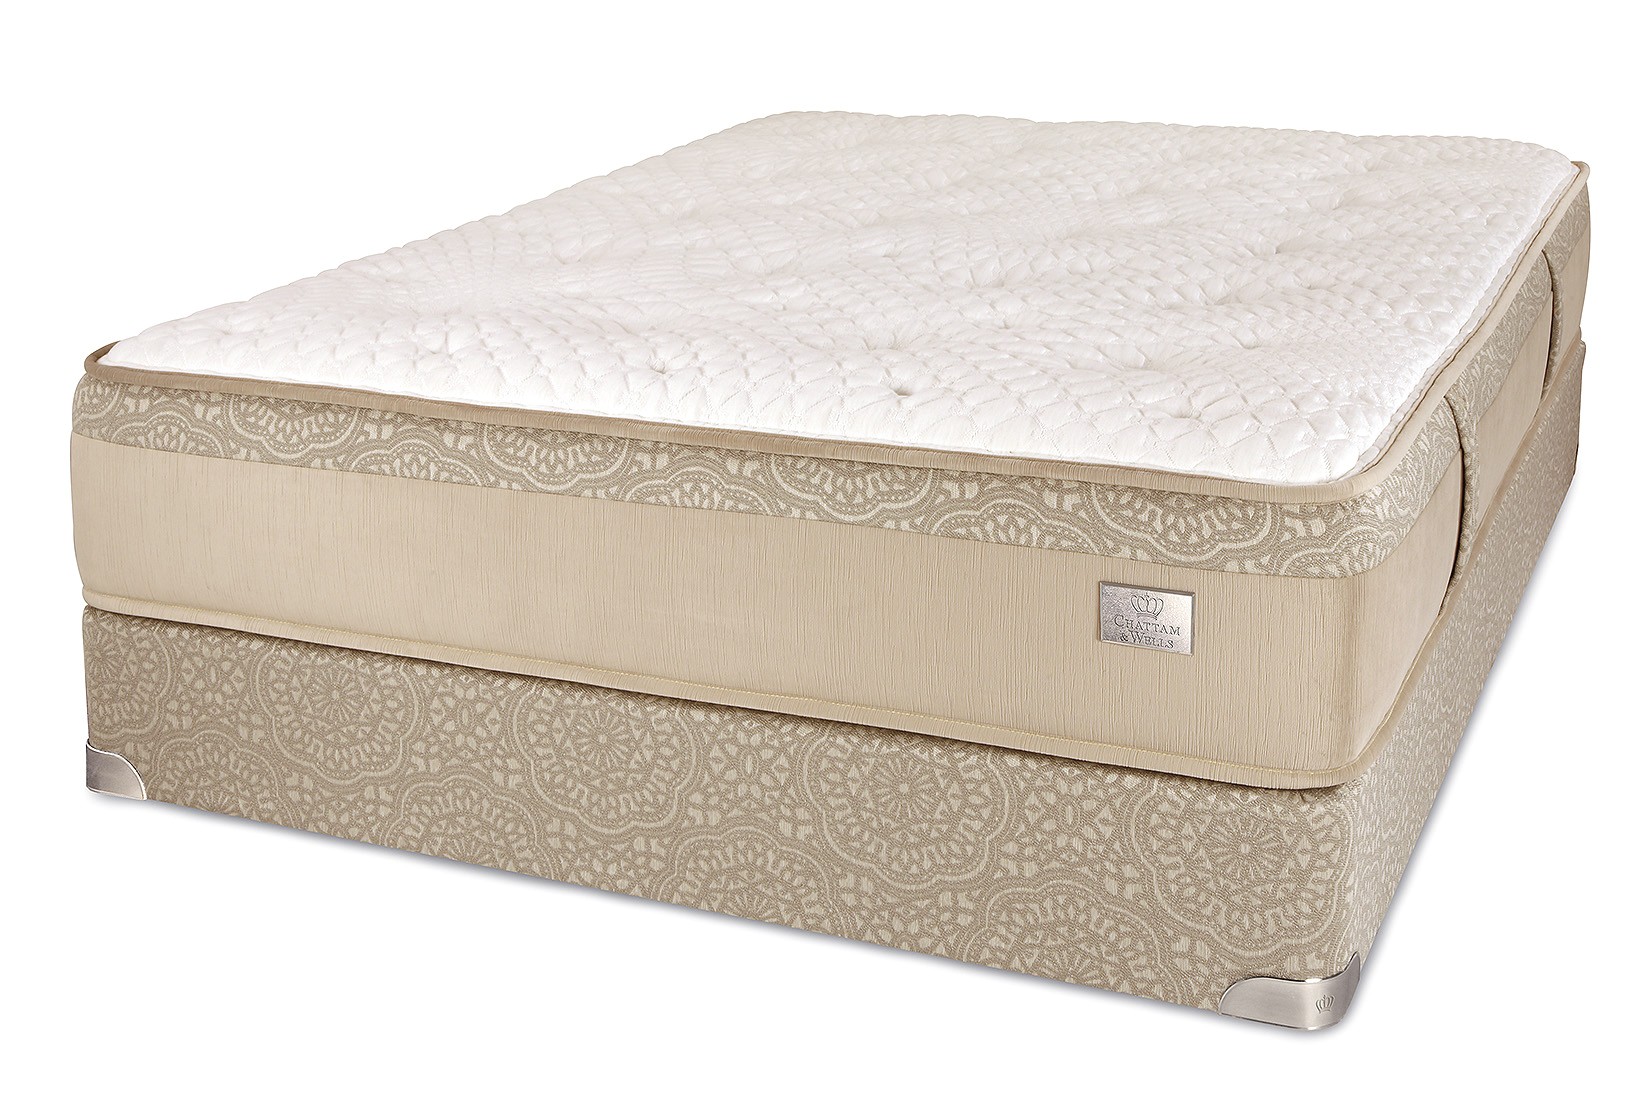 chattam and wells hamilton luxury firm mattress